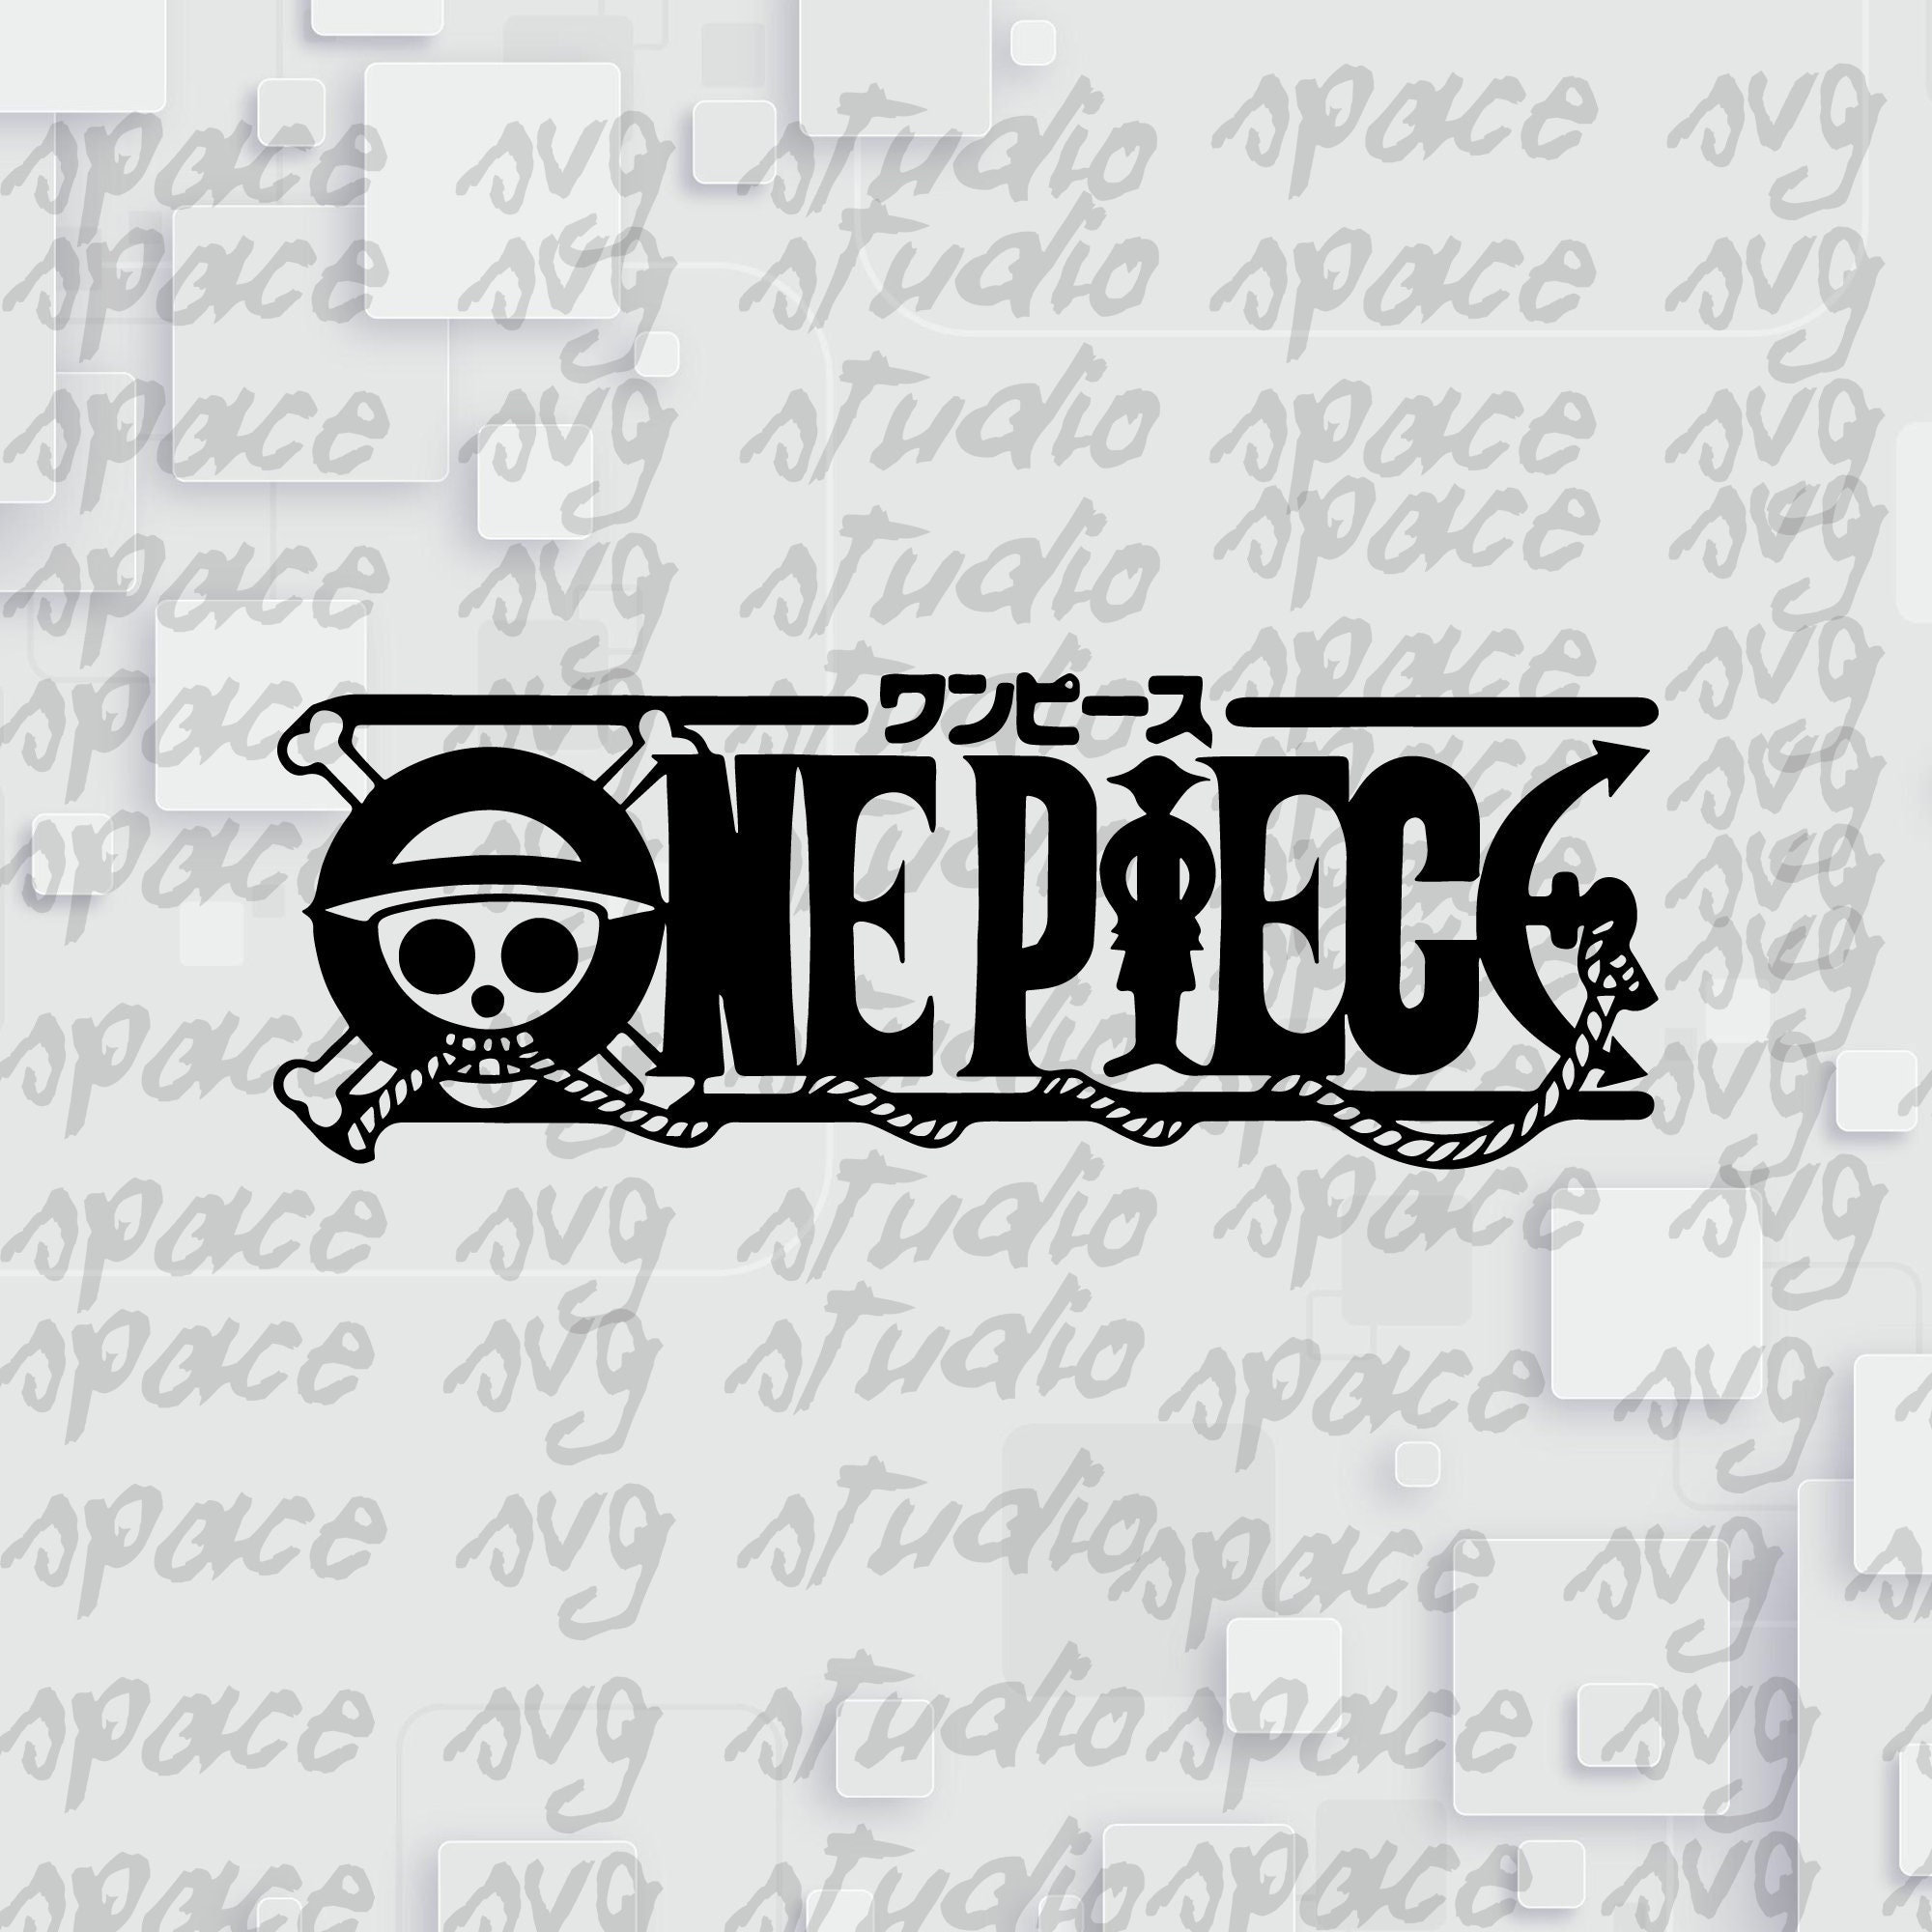 120 One Piece SVG, one piece png, one piece bundle, luffy svg, luffy p –  Drabundlesvg